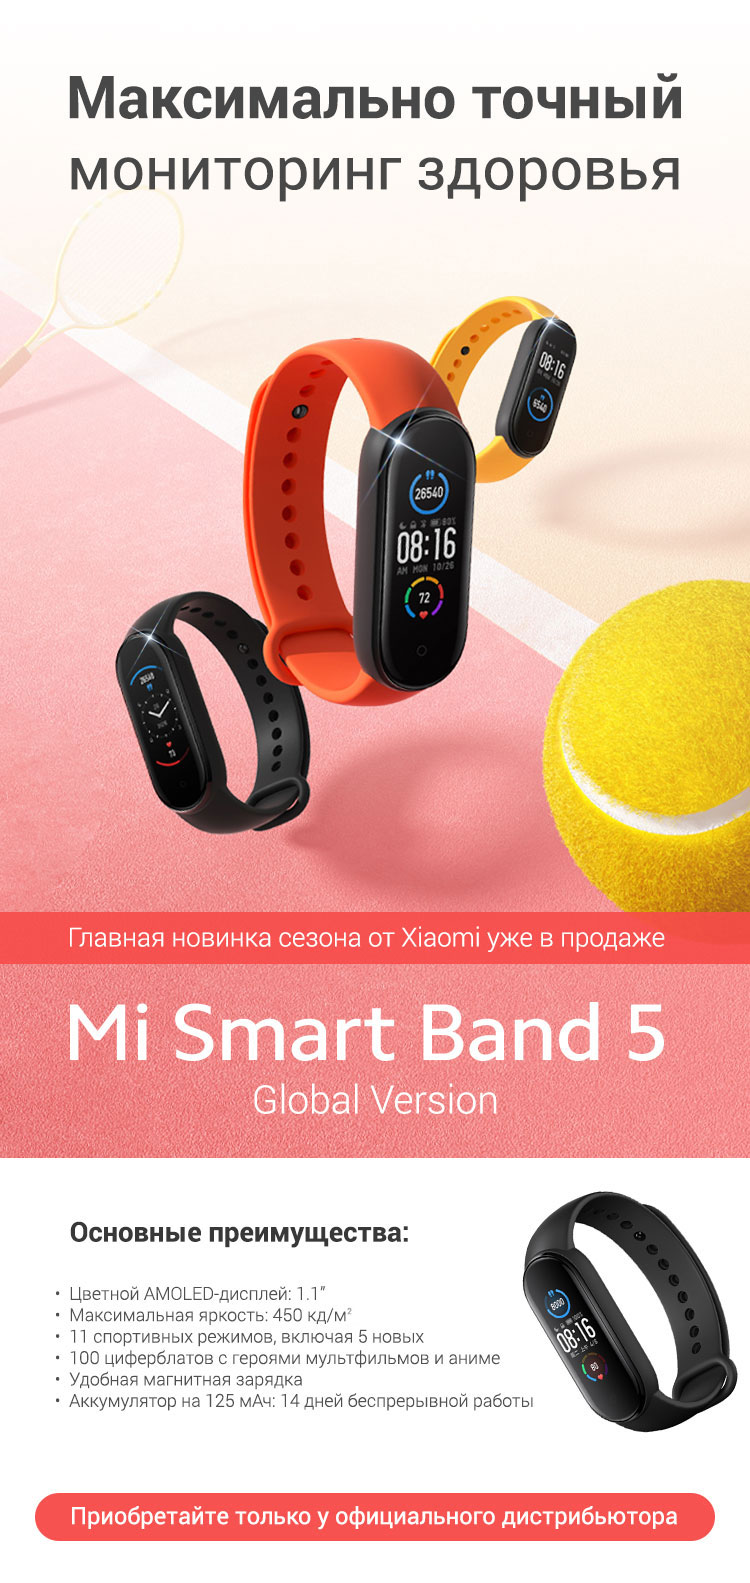 Долгожданный фитнес-браслет Mi Smart Band 5 уже в продаже